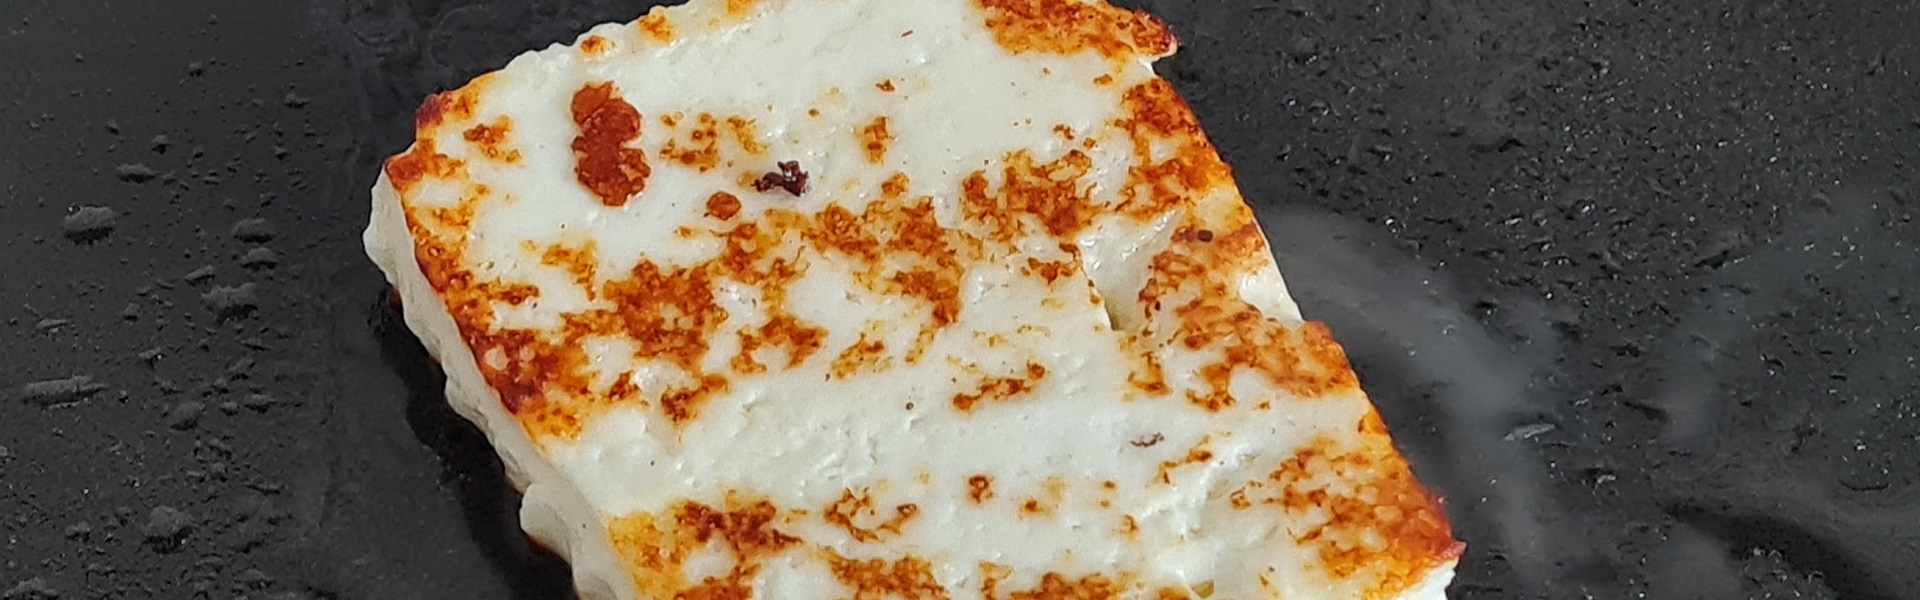 адыгейский сыр плавится в духовке на пицце фото 48